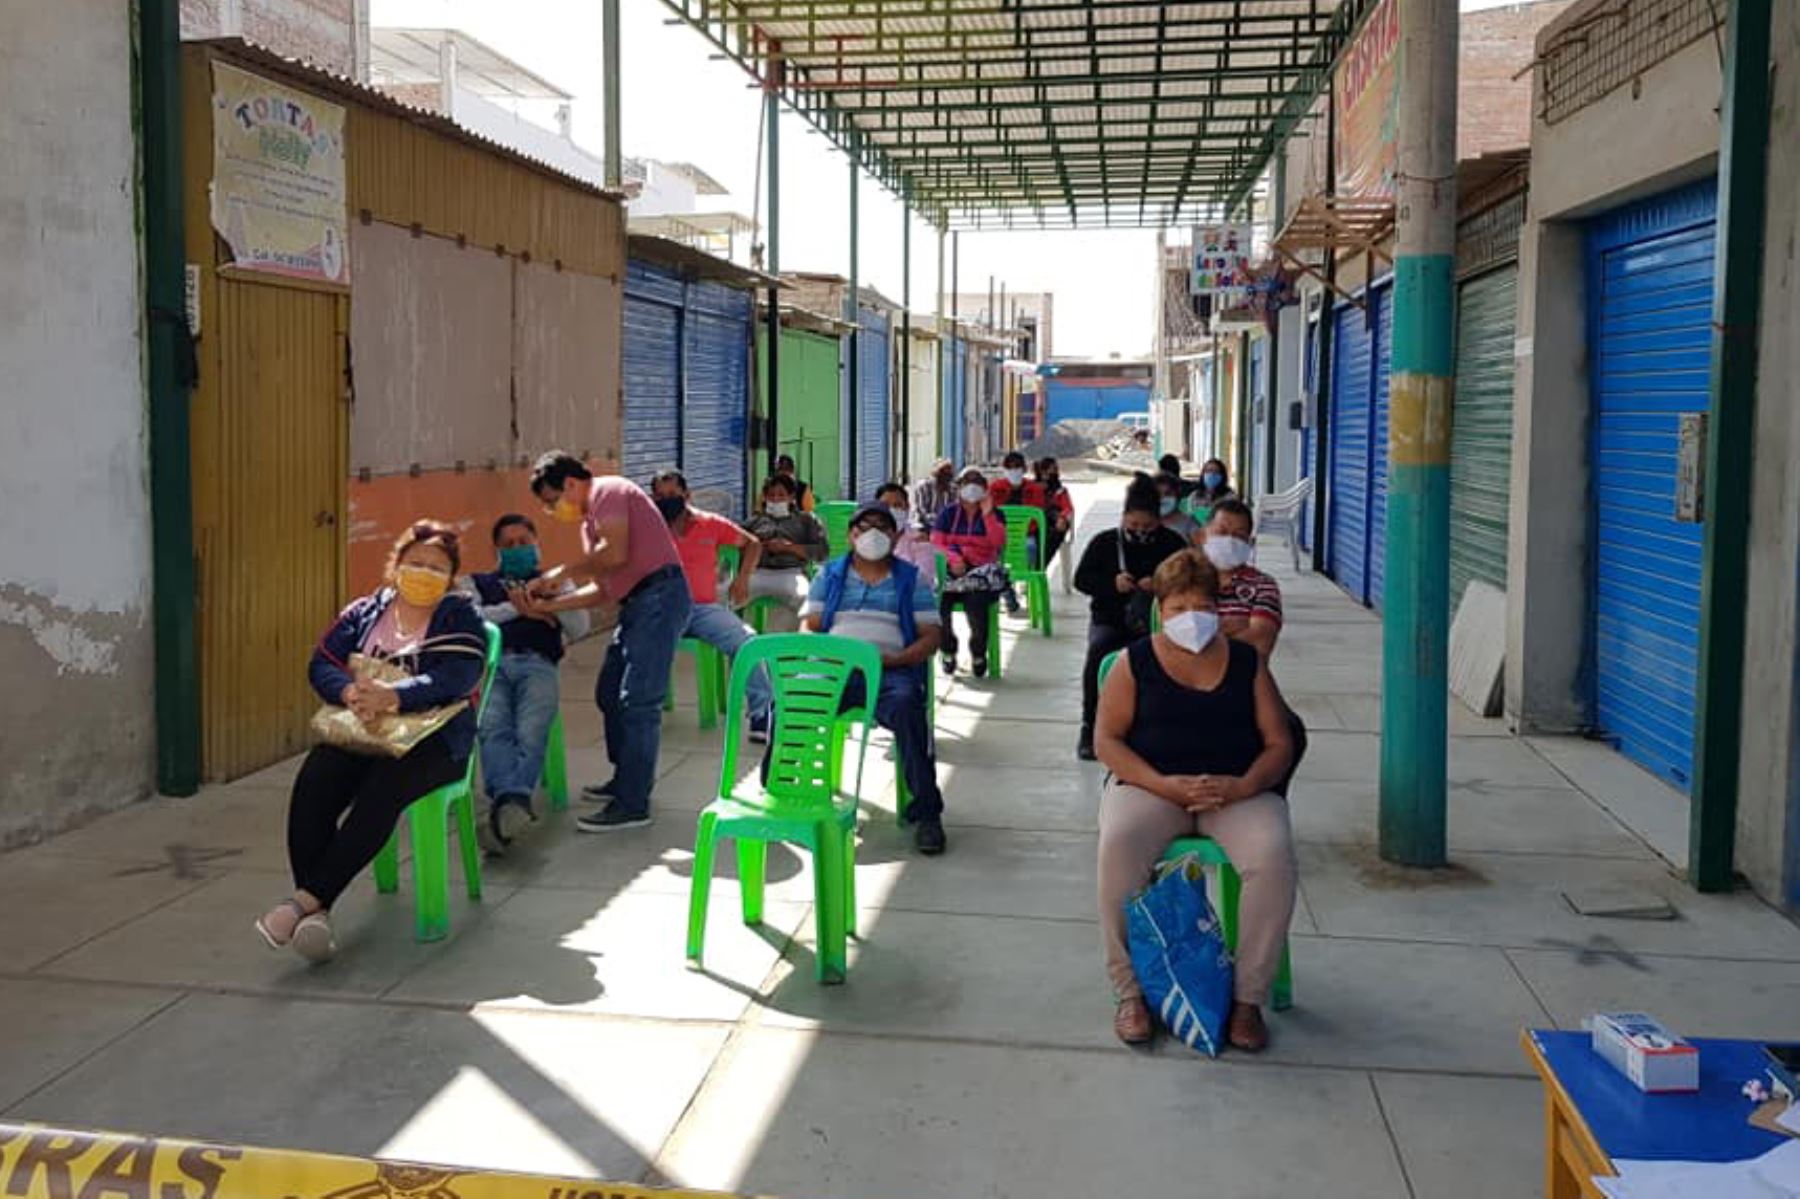 Los comerciantes del mercado La Perla de Chimbote decidieron someterse a pruebas de descarte de covid-19. Foto: ANDINA/Difusión